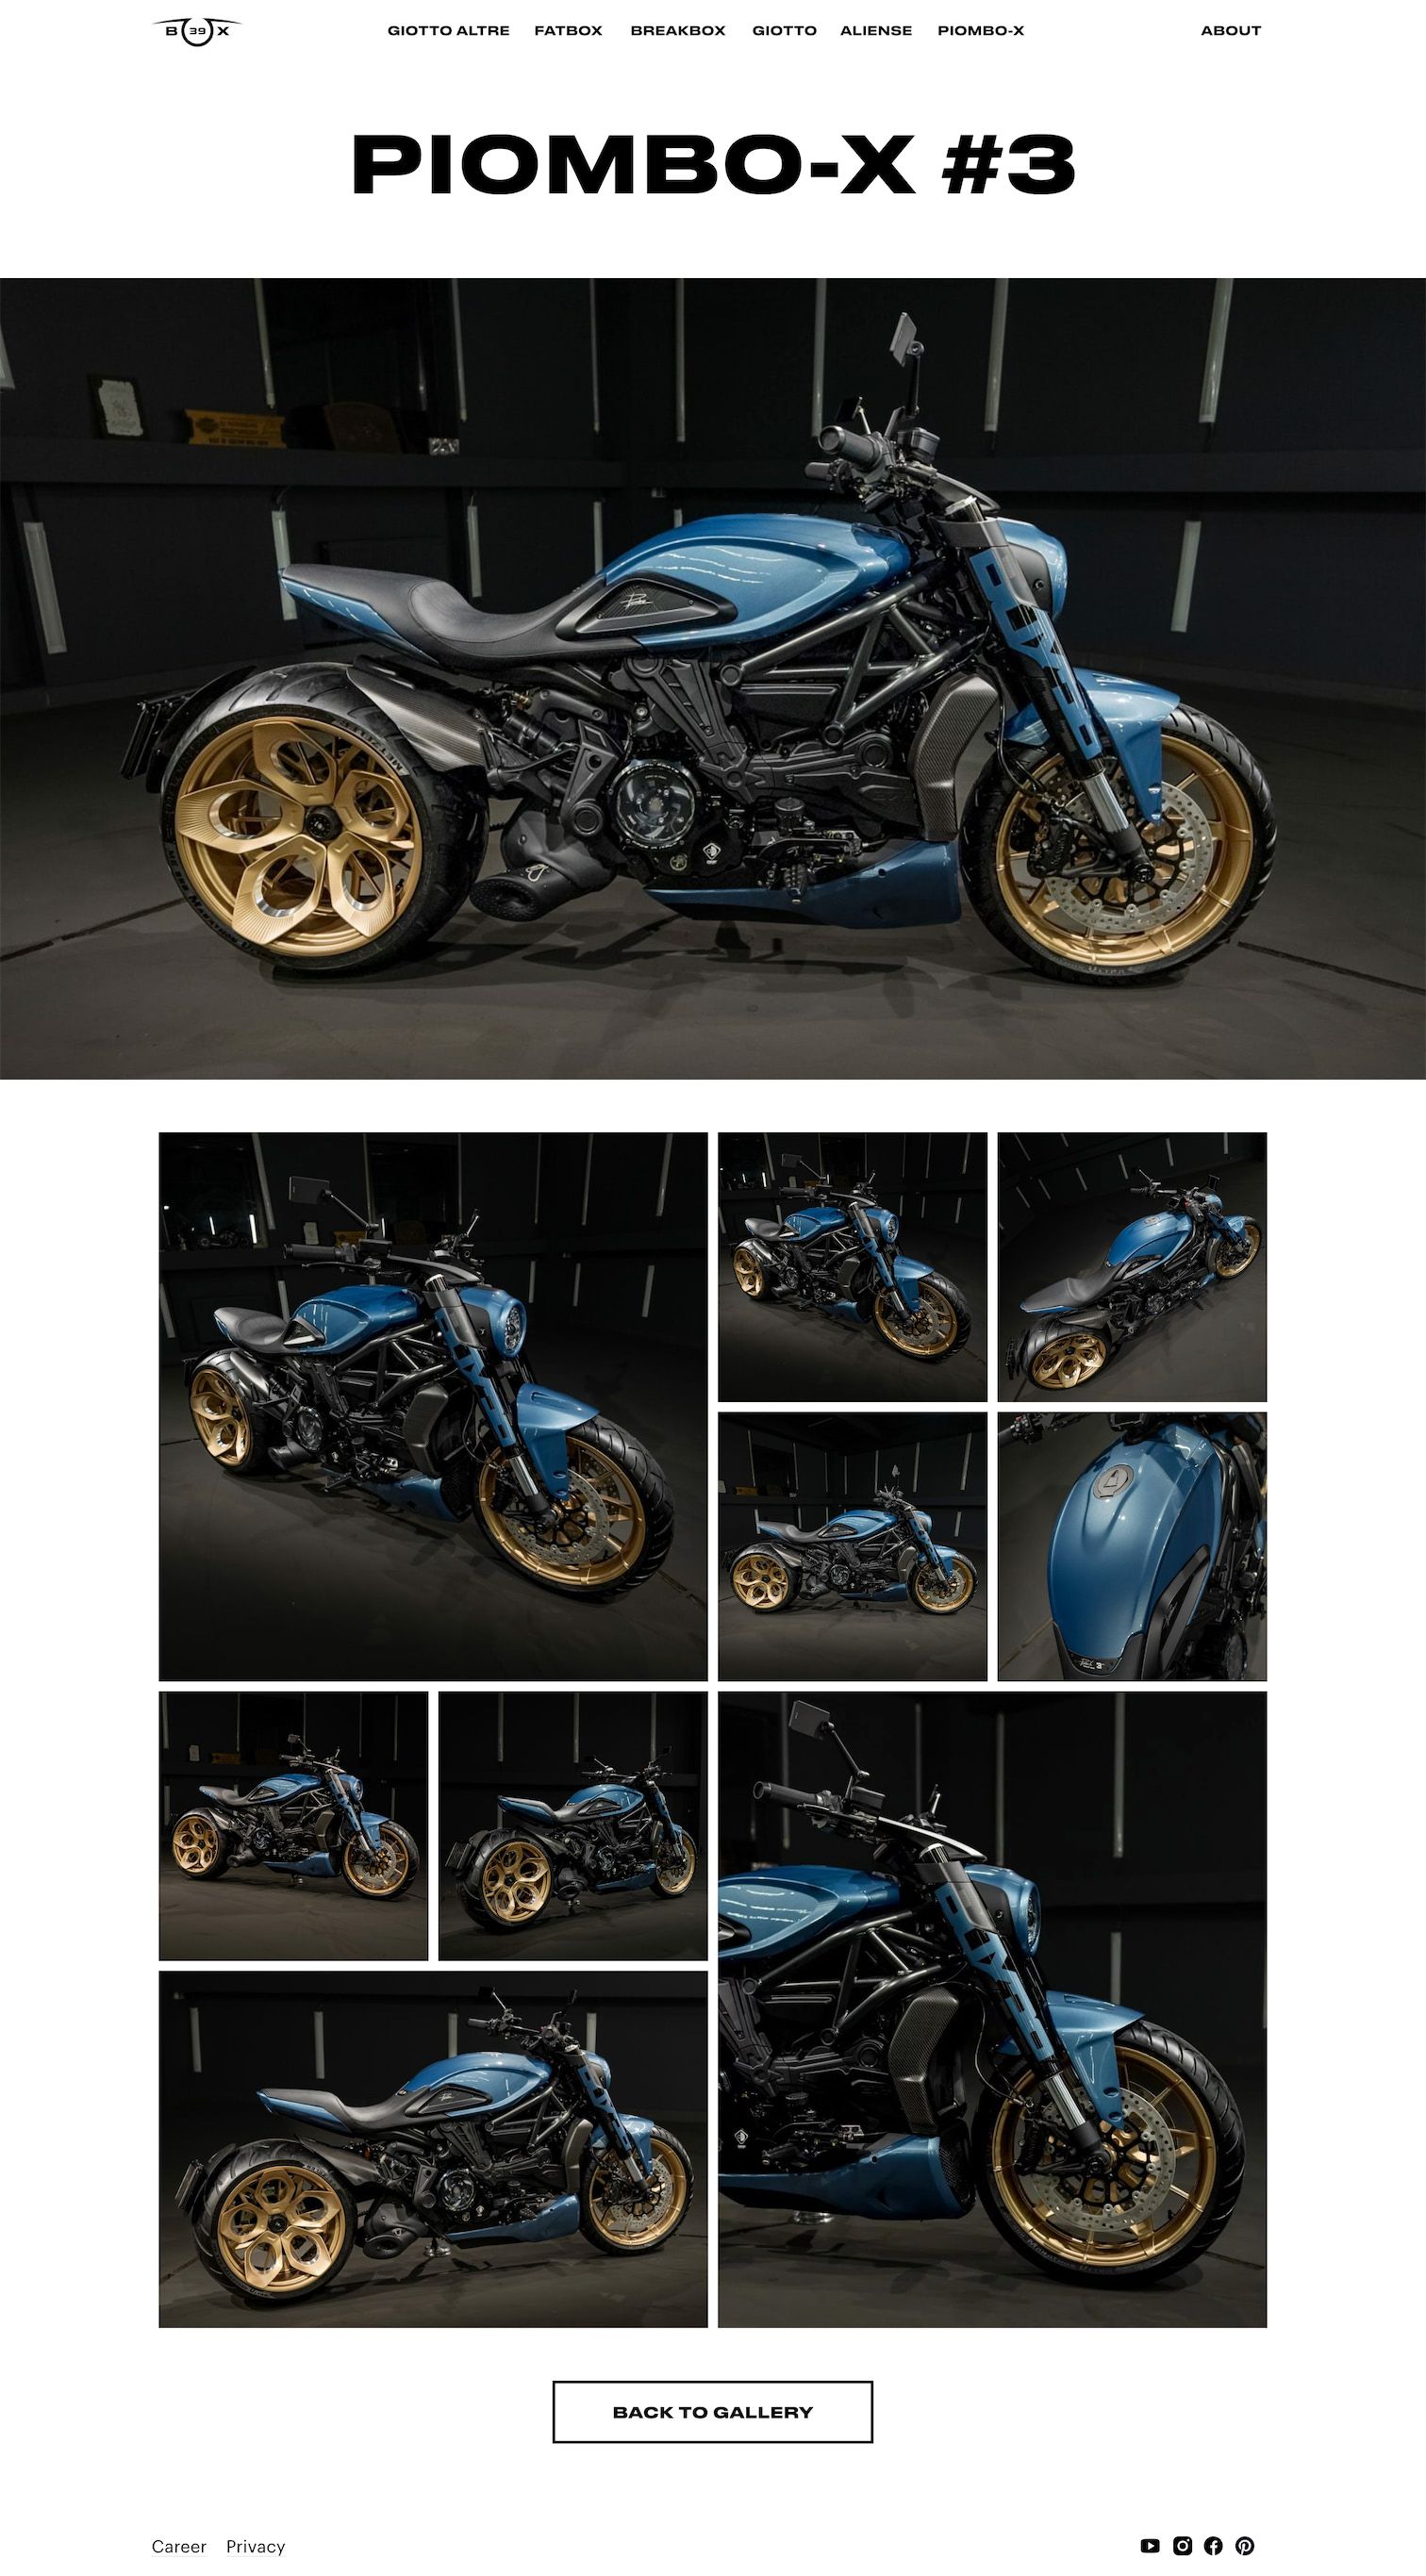 Галерея мотоцикла Piombo-X #3